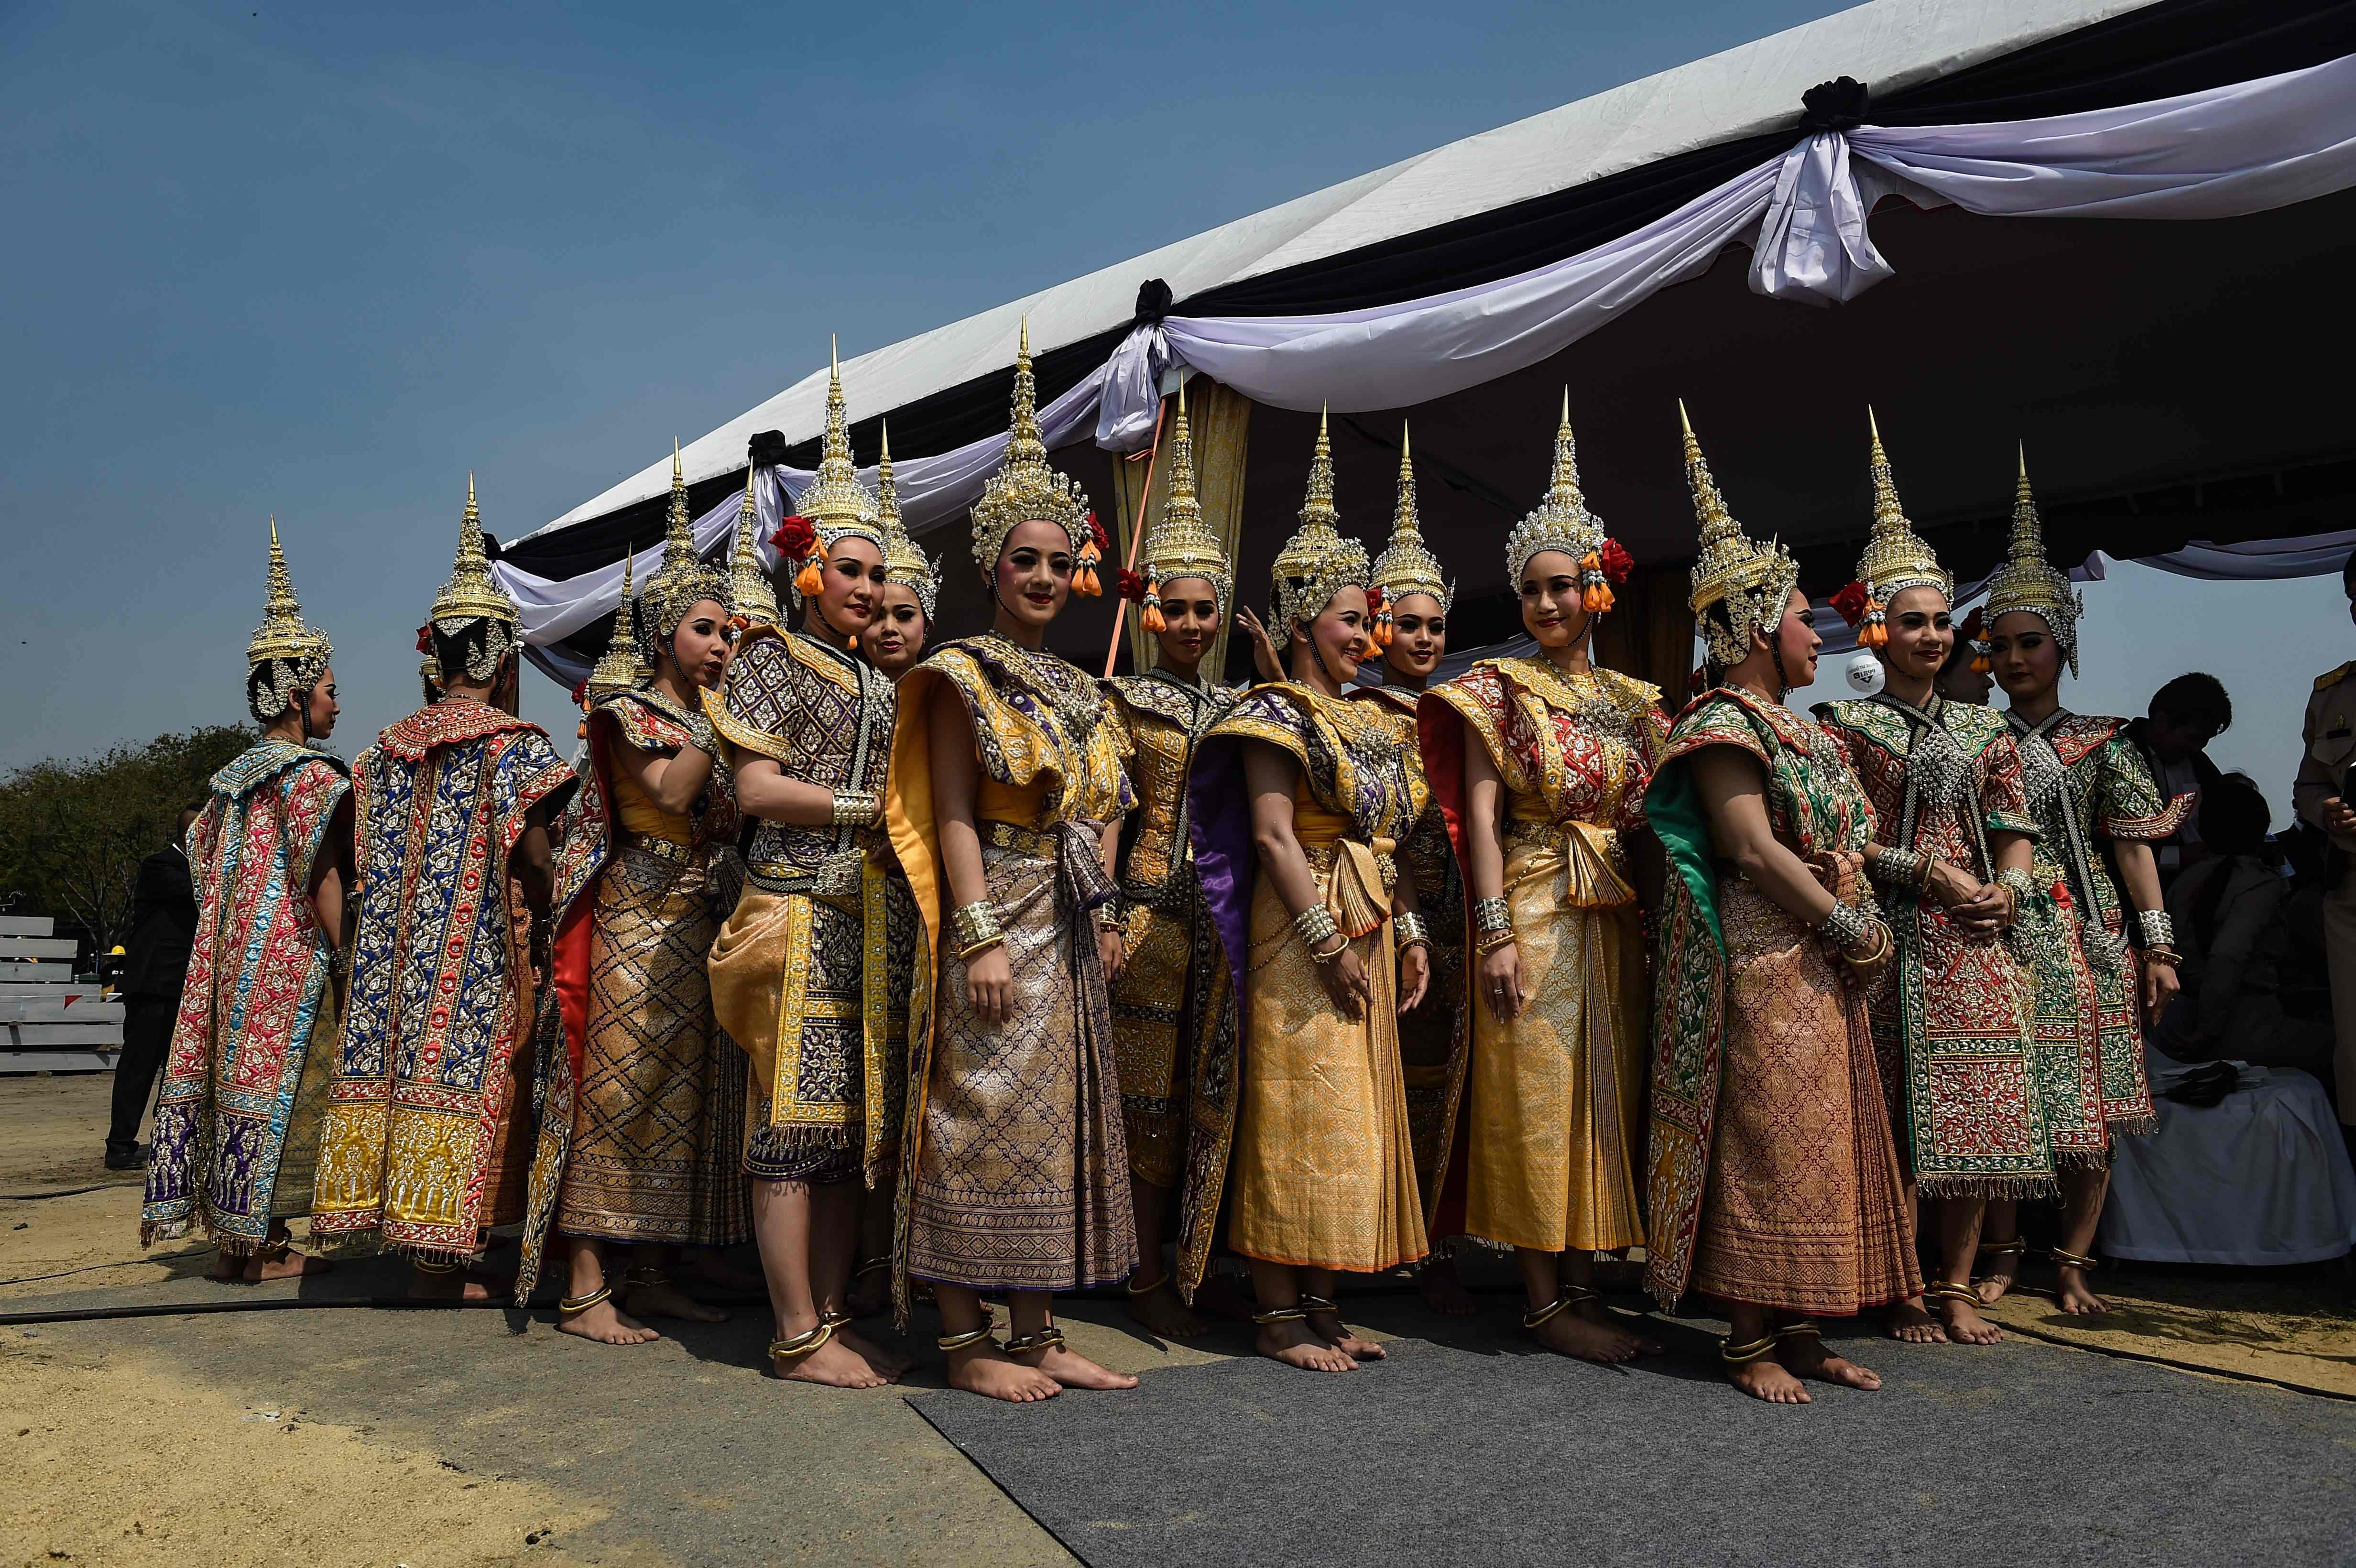 راقصات تايلانديات يؤدين بروفات لتقديم عروض خلال الطقوس الدينية لمحرقة الملك الراحل بوميبول